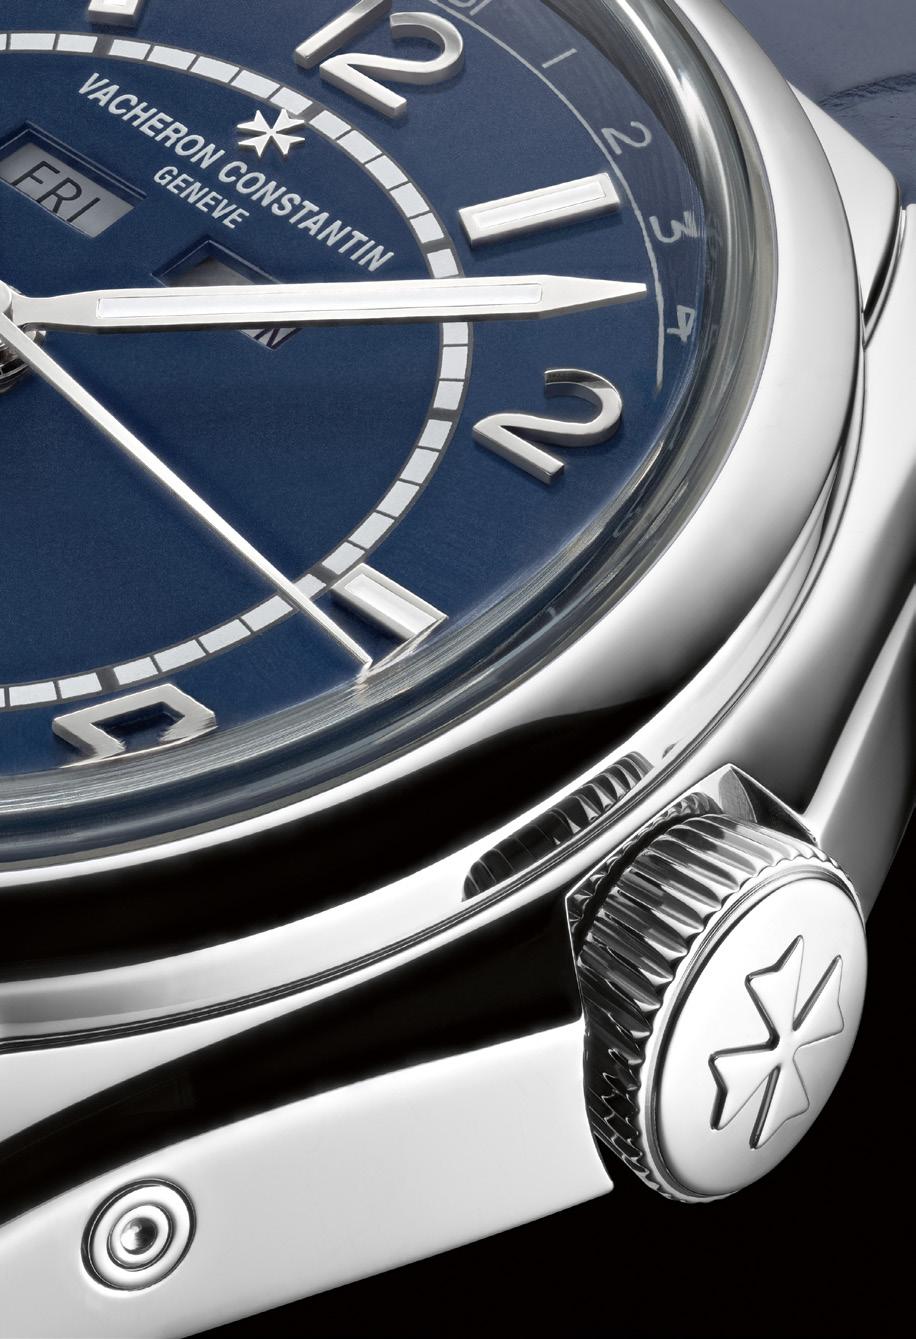 Un nuovo colore di quadrante: blu petrolio Stile rétro contemporaneo per un elegante orologio maschile da indossare in ogni occasione Reinterpretazione moderna dell iconica referenza 6073, lanciata